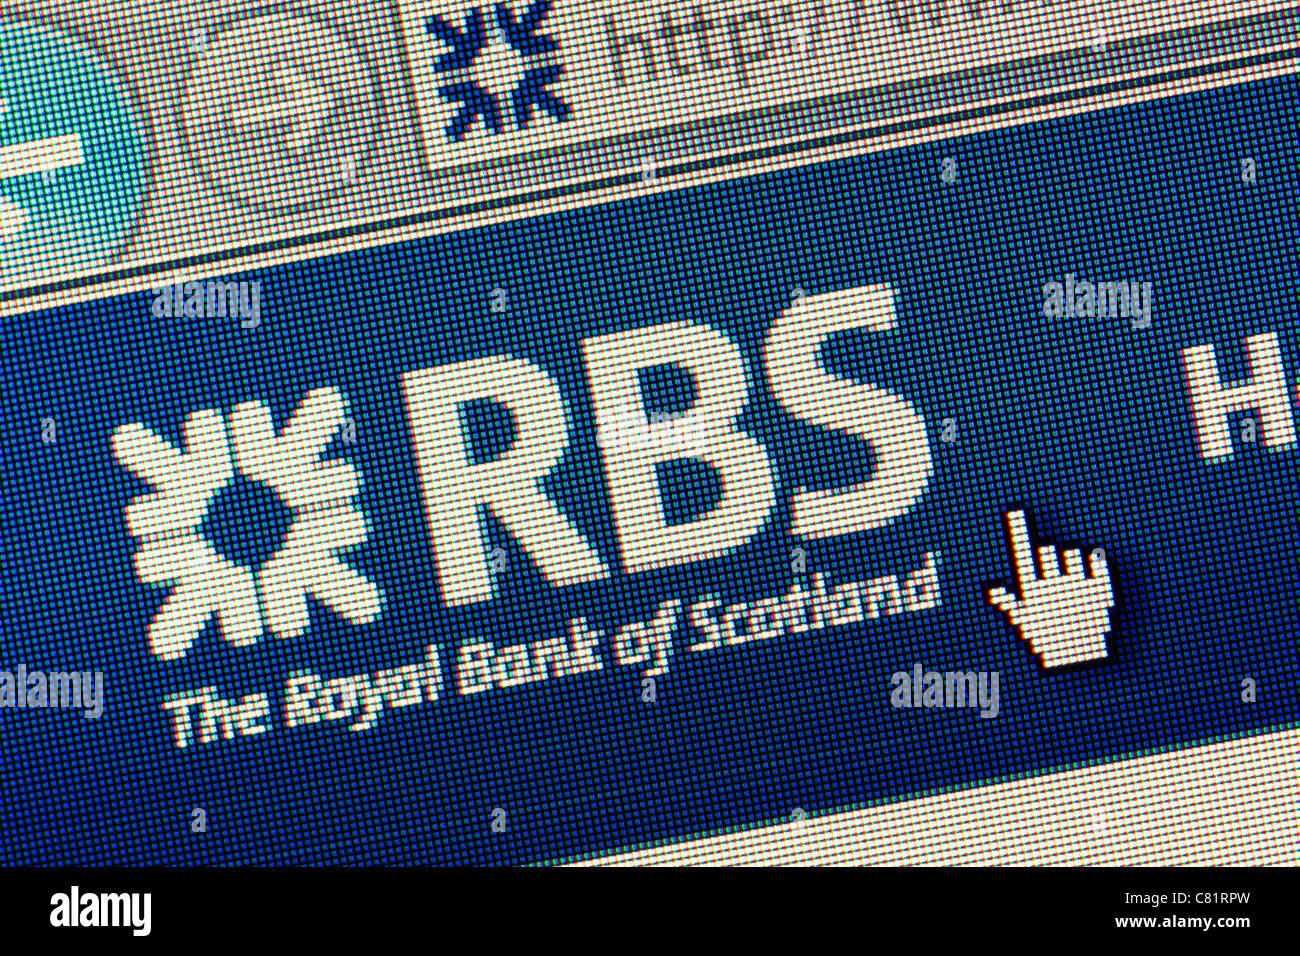 Royal Bank of Scotland RBS logo et un nouveau site web close up Banque D'Images